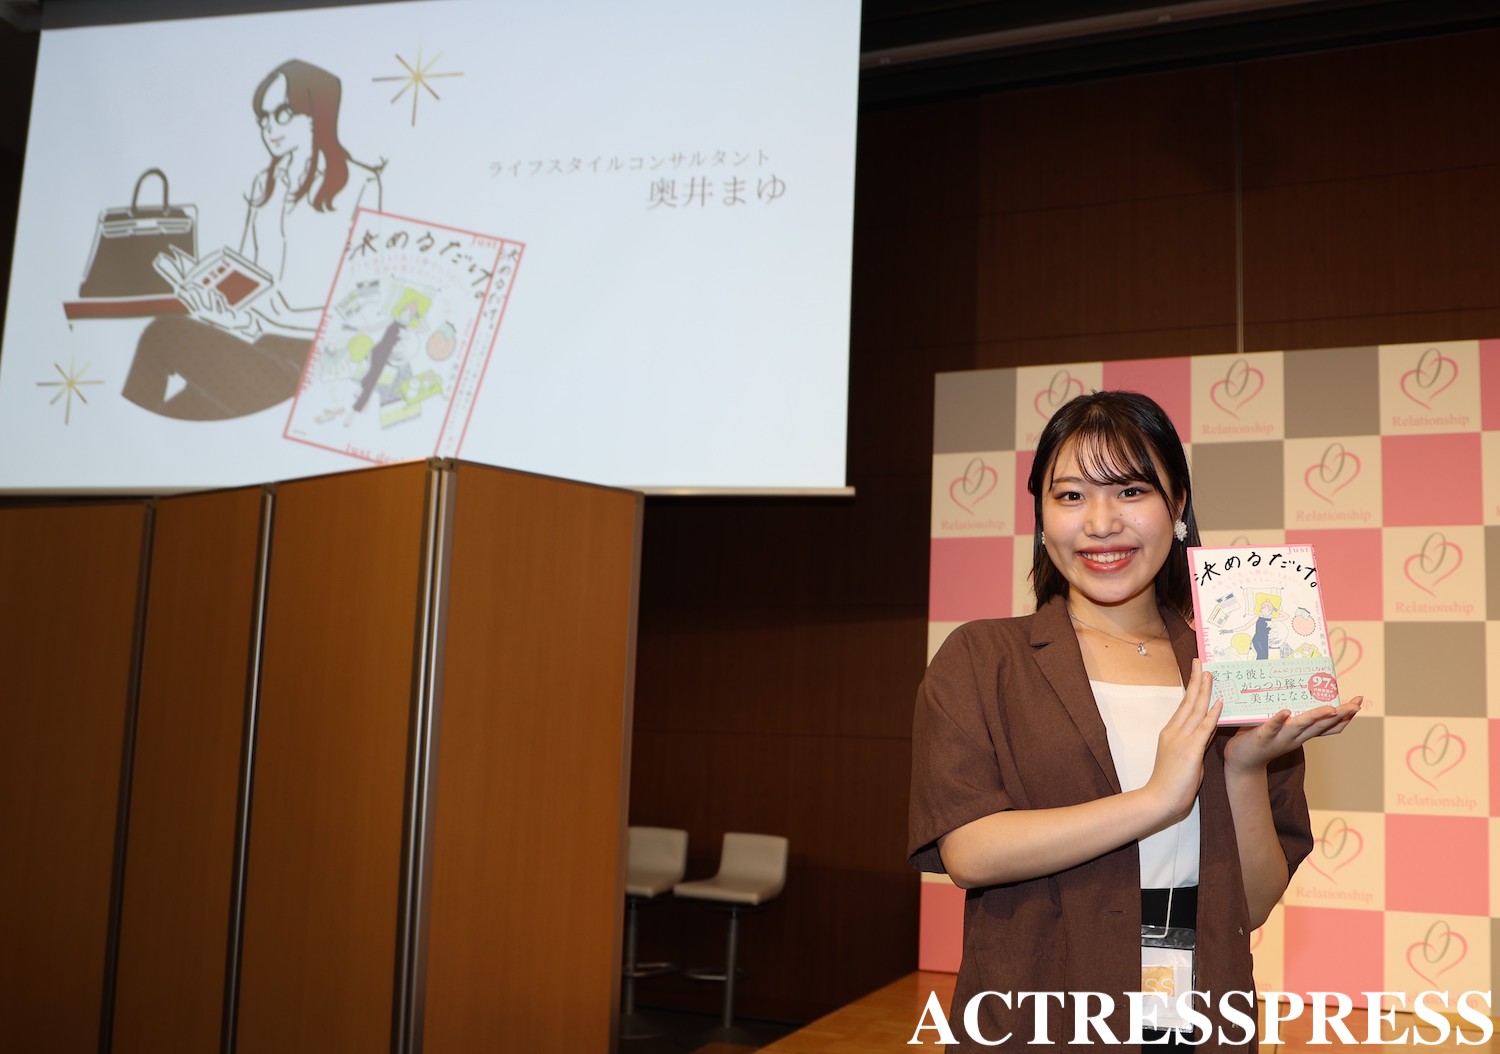 吉田千夏（青山学院大学）ACTRESS PRESS REPORTER（アクトレスプレス リポーター）